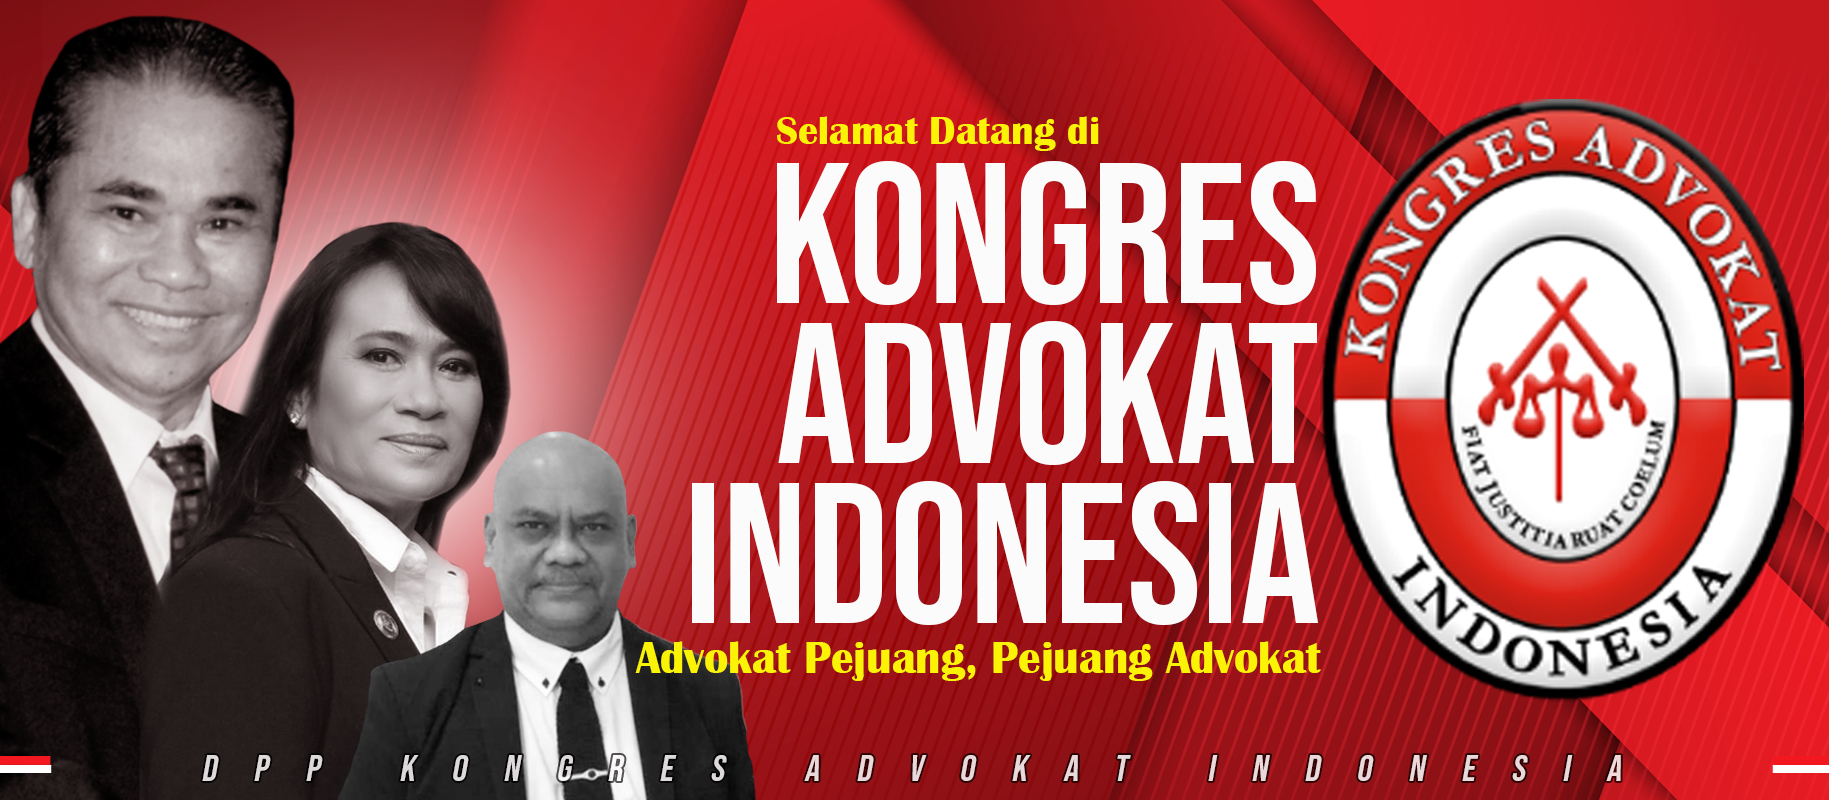 DPP KAI KONGRES ADVOKAT INDONESIA